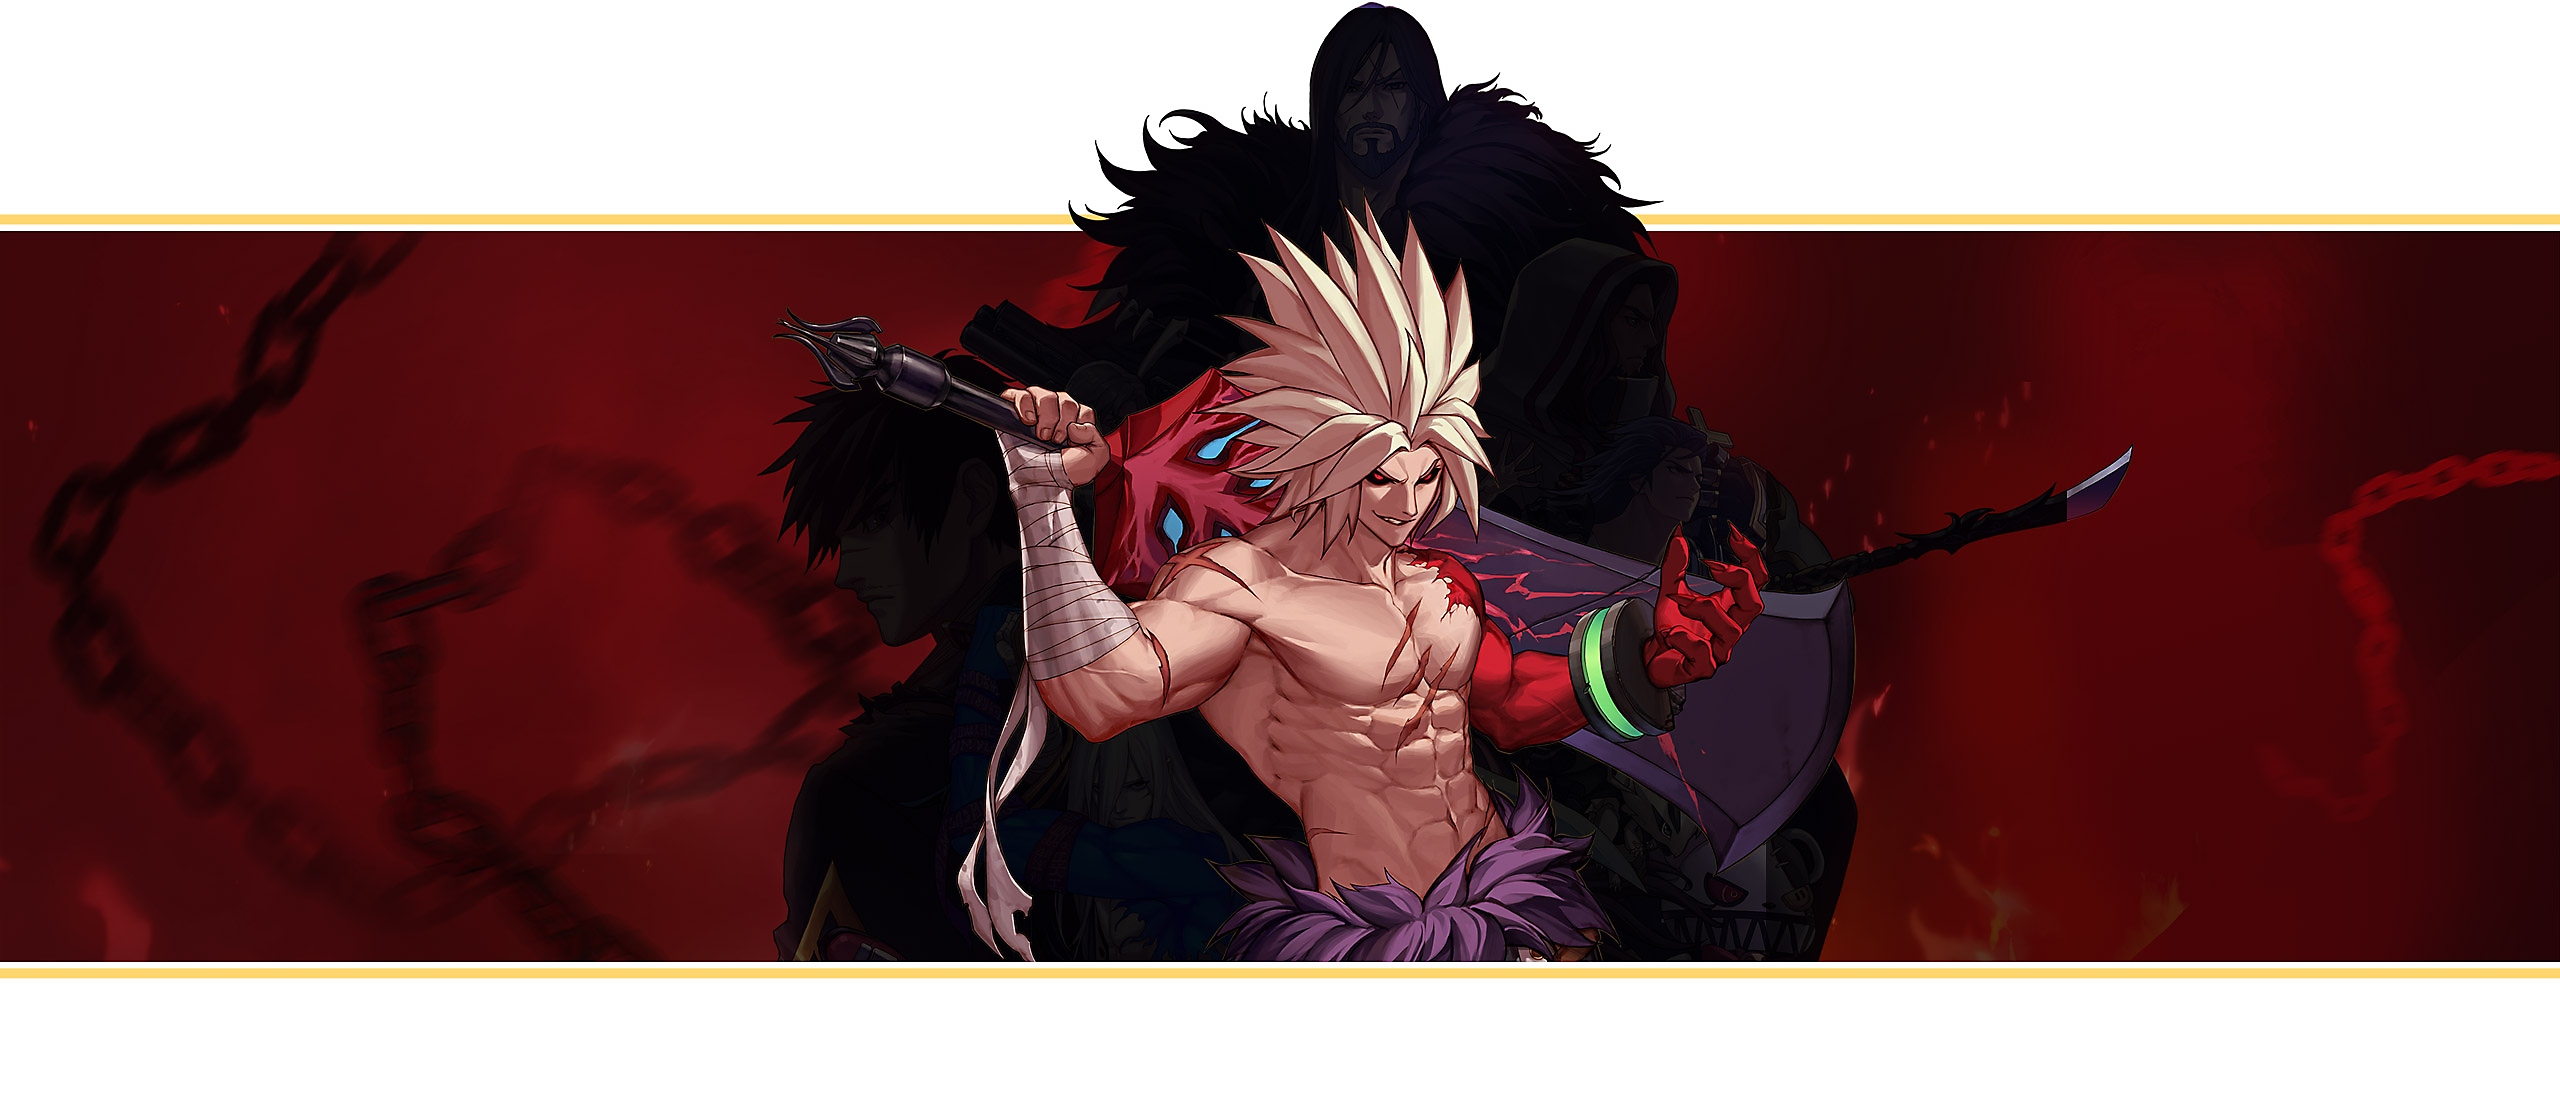 Banner de destaque de DNF Duel baseado na arte do jogo. Um personagem sem camisa apoia uma espada muito grande e larga sobre seu ombro.